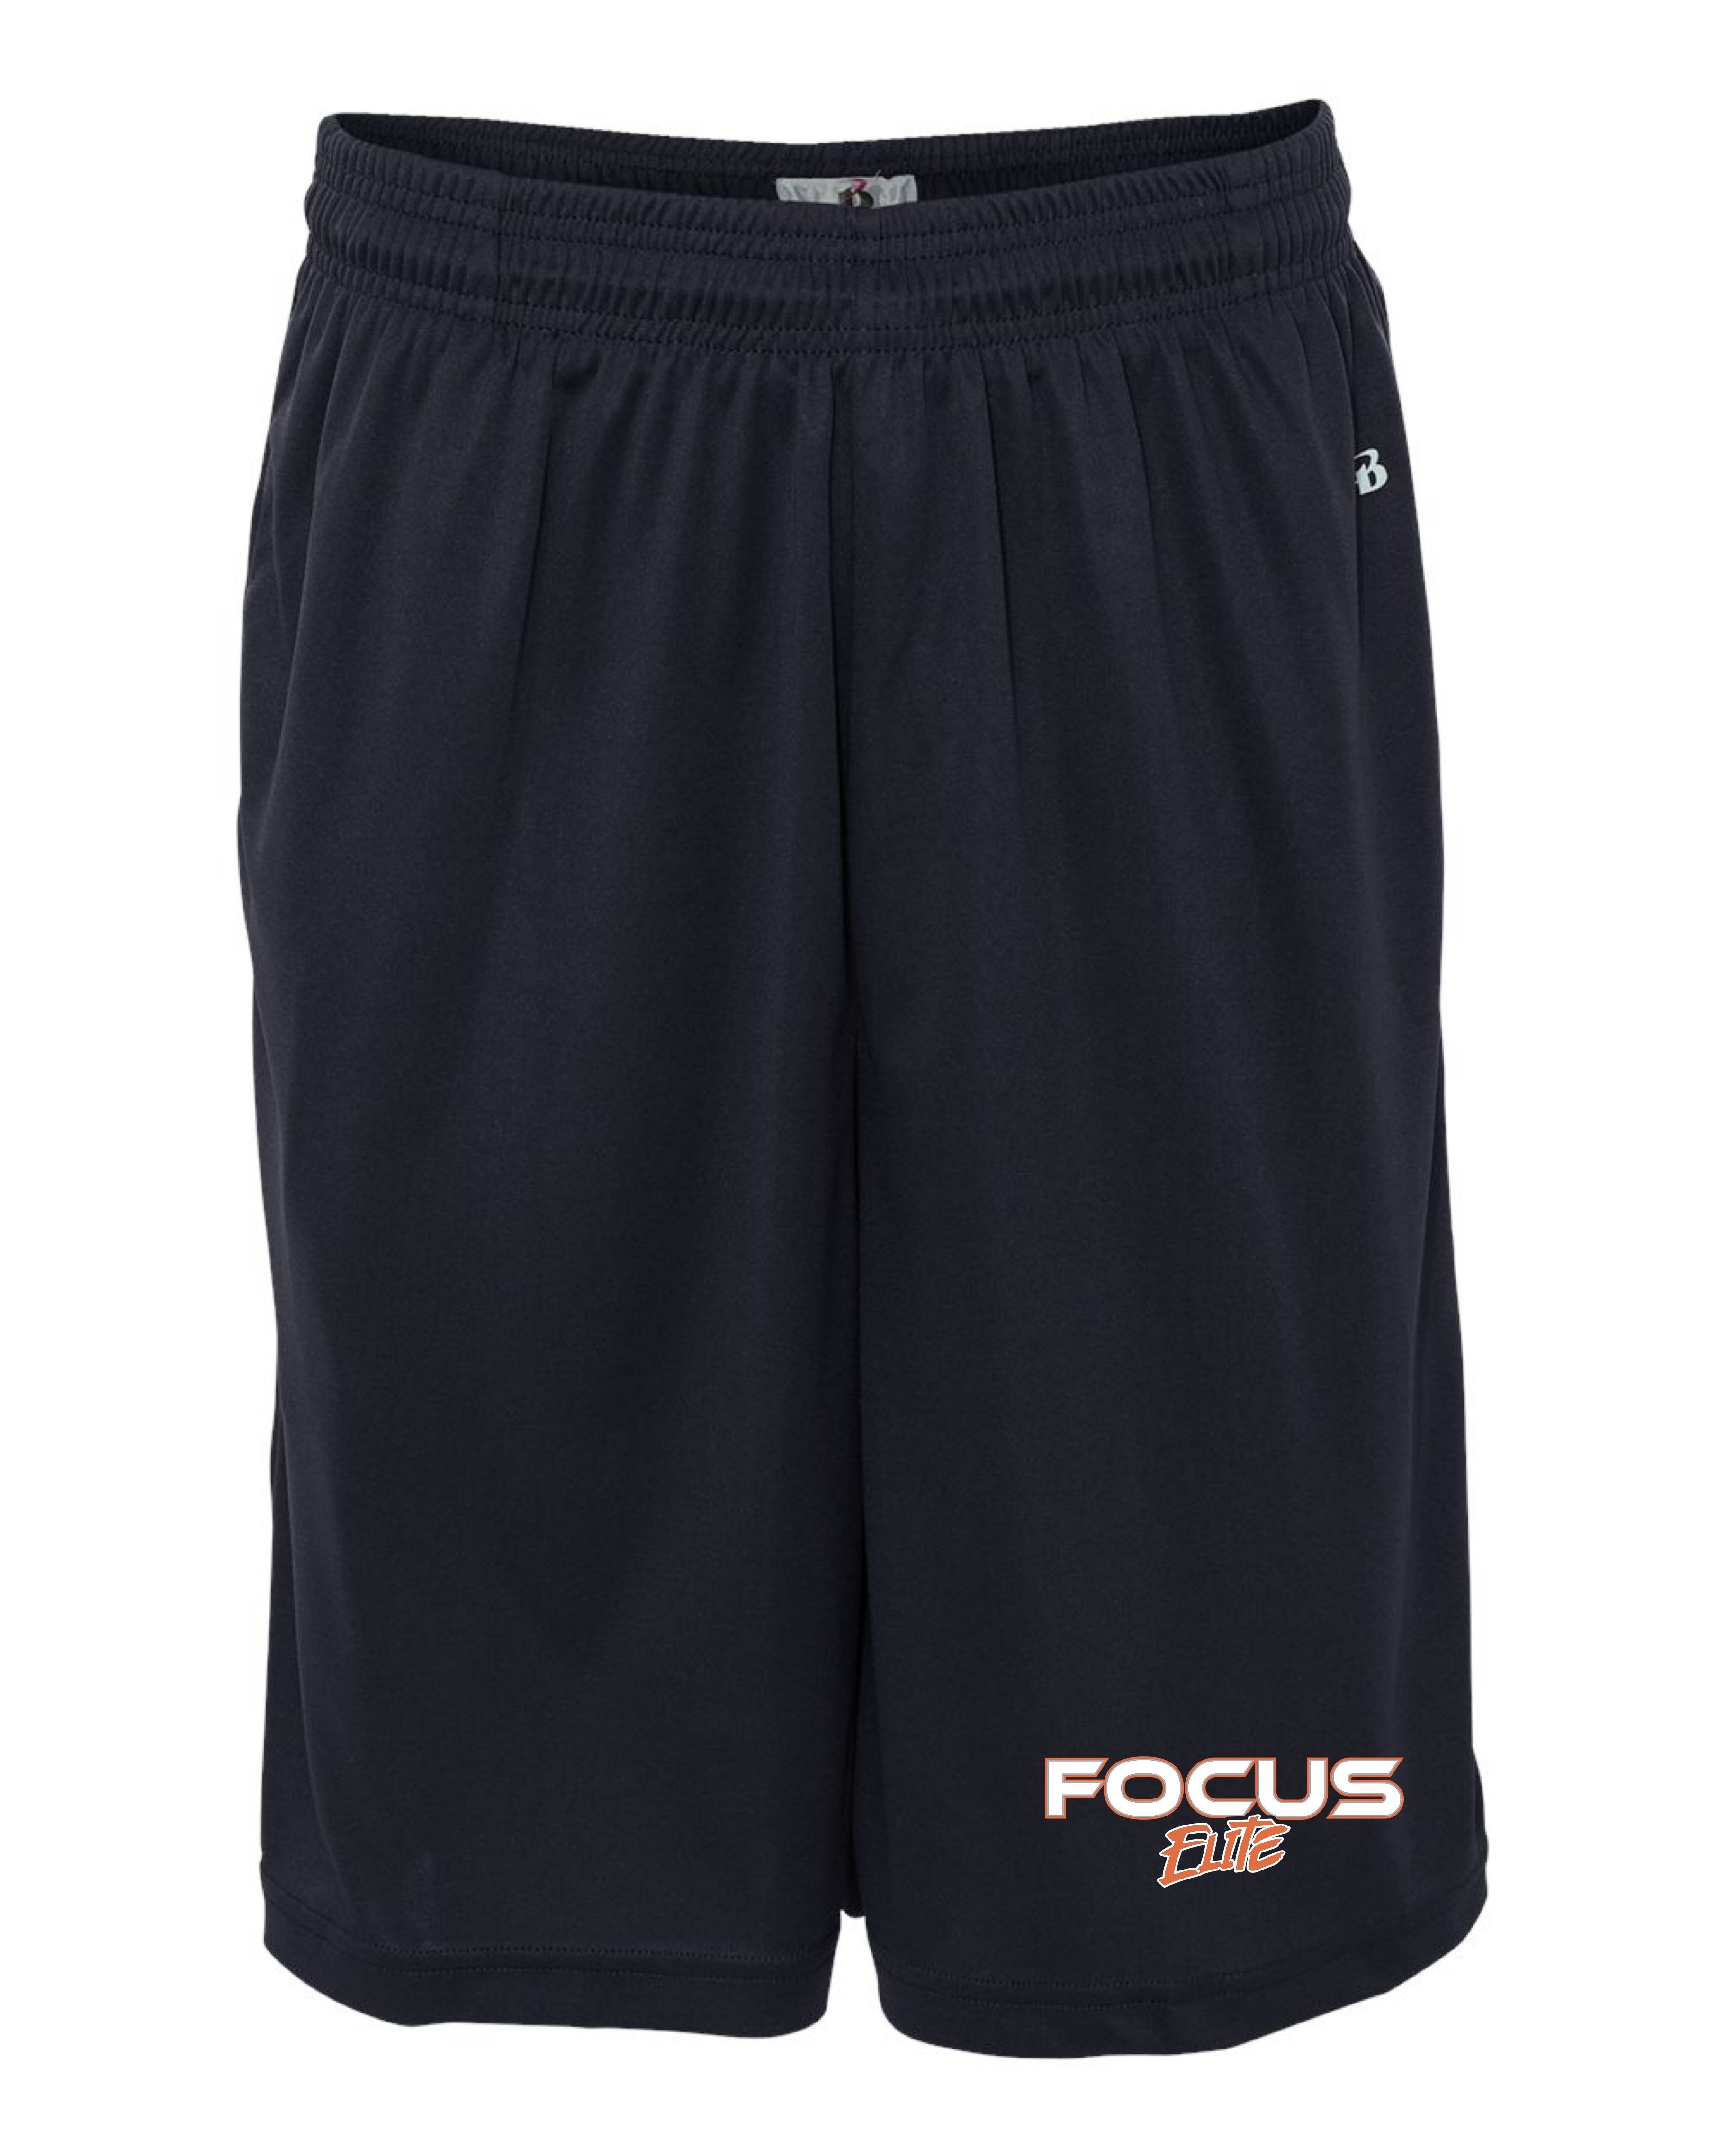 Focus Shorts - Dri Fit - MENS